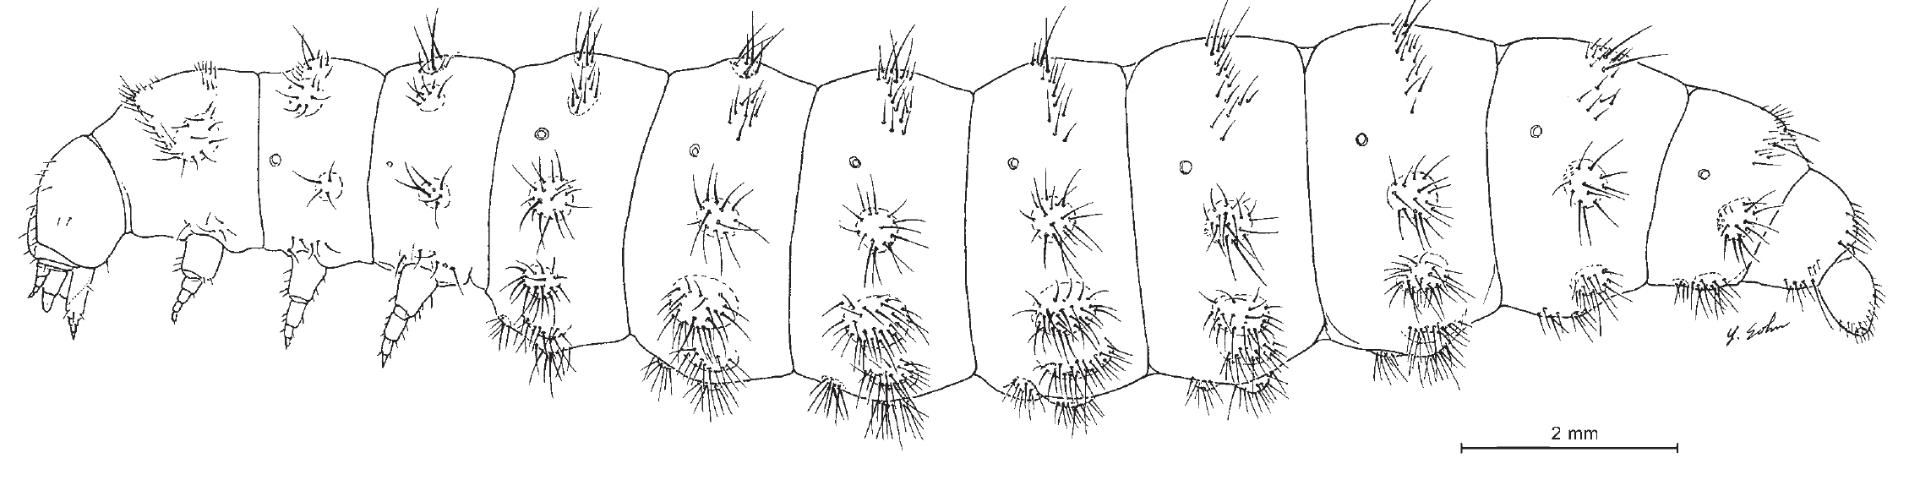 Figure 3. Habitus (left lateral aspect) of Pheropsophus aequinoctialis, third instar with legs shown (Frank et al. 2009).